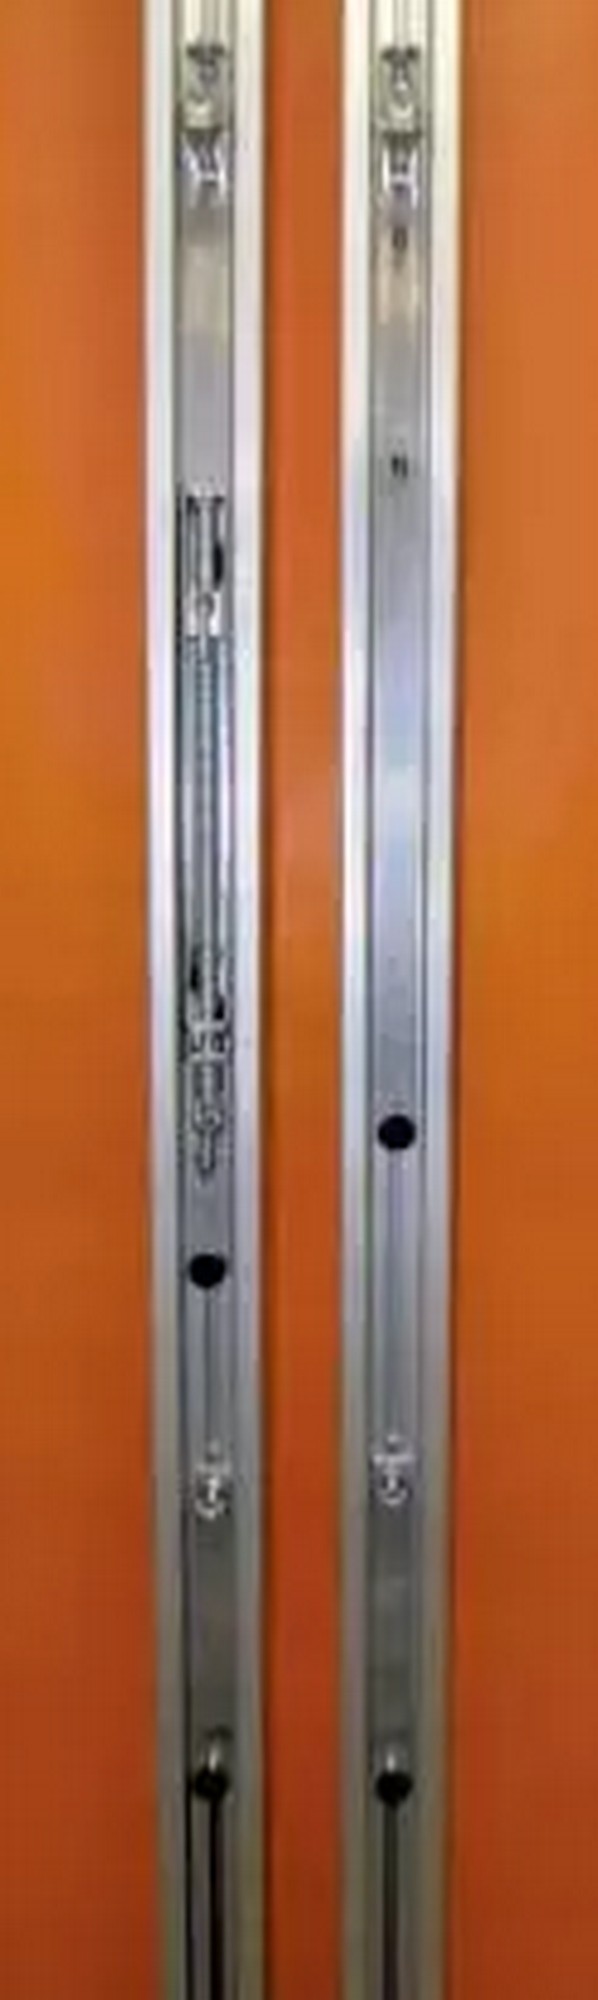 Стойки волейбольные круглые алюминиевые ф83 мм. Установка в стаканы высотой  350 мм с крышками (стаканы в комплекте) Haspo 924-516 598_2000